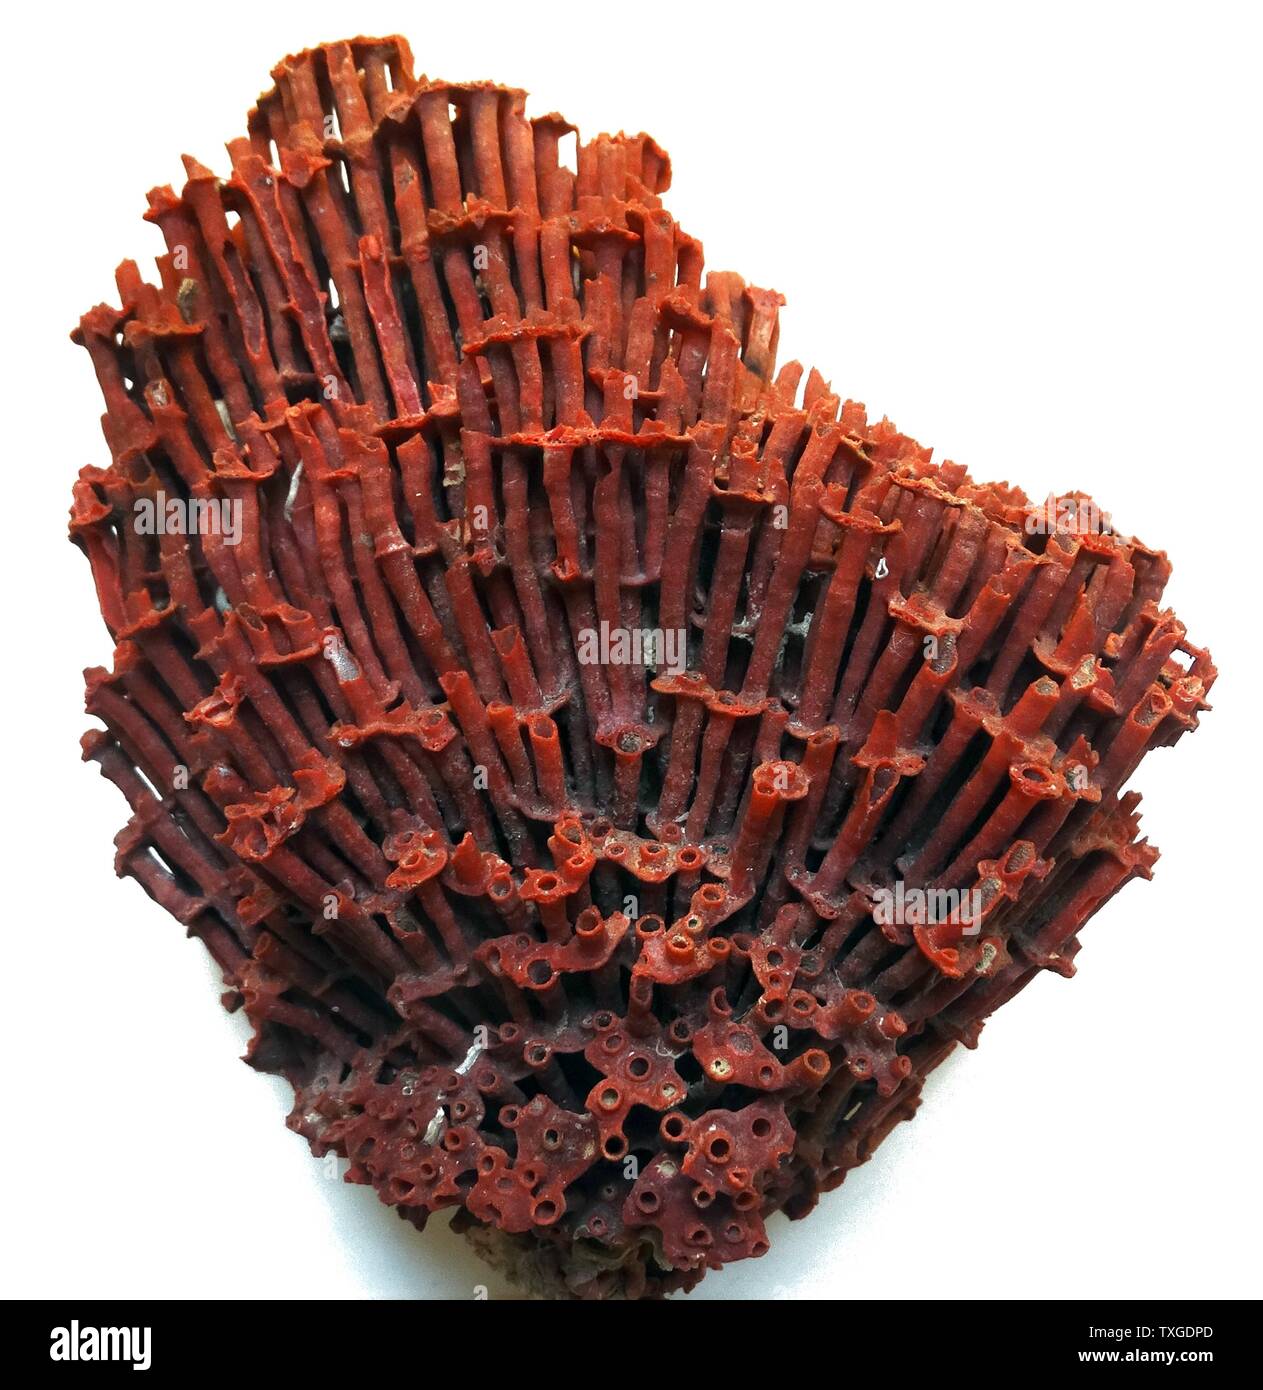 Tubipora Musica (Organ Pipe Koralle), ursprünglich aus den Gewässern in den Indischen Ozean und zentralen Regionen des Pazifischen Ozeans. Nur Arten von Weichkorallen. Indonesien. Datierte 1759 Stockfoto